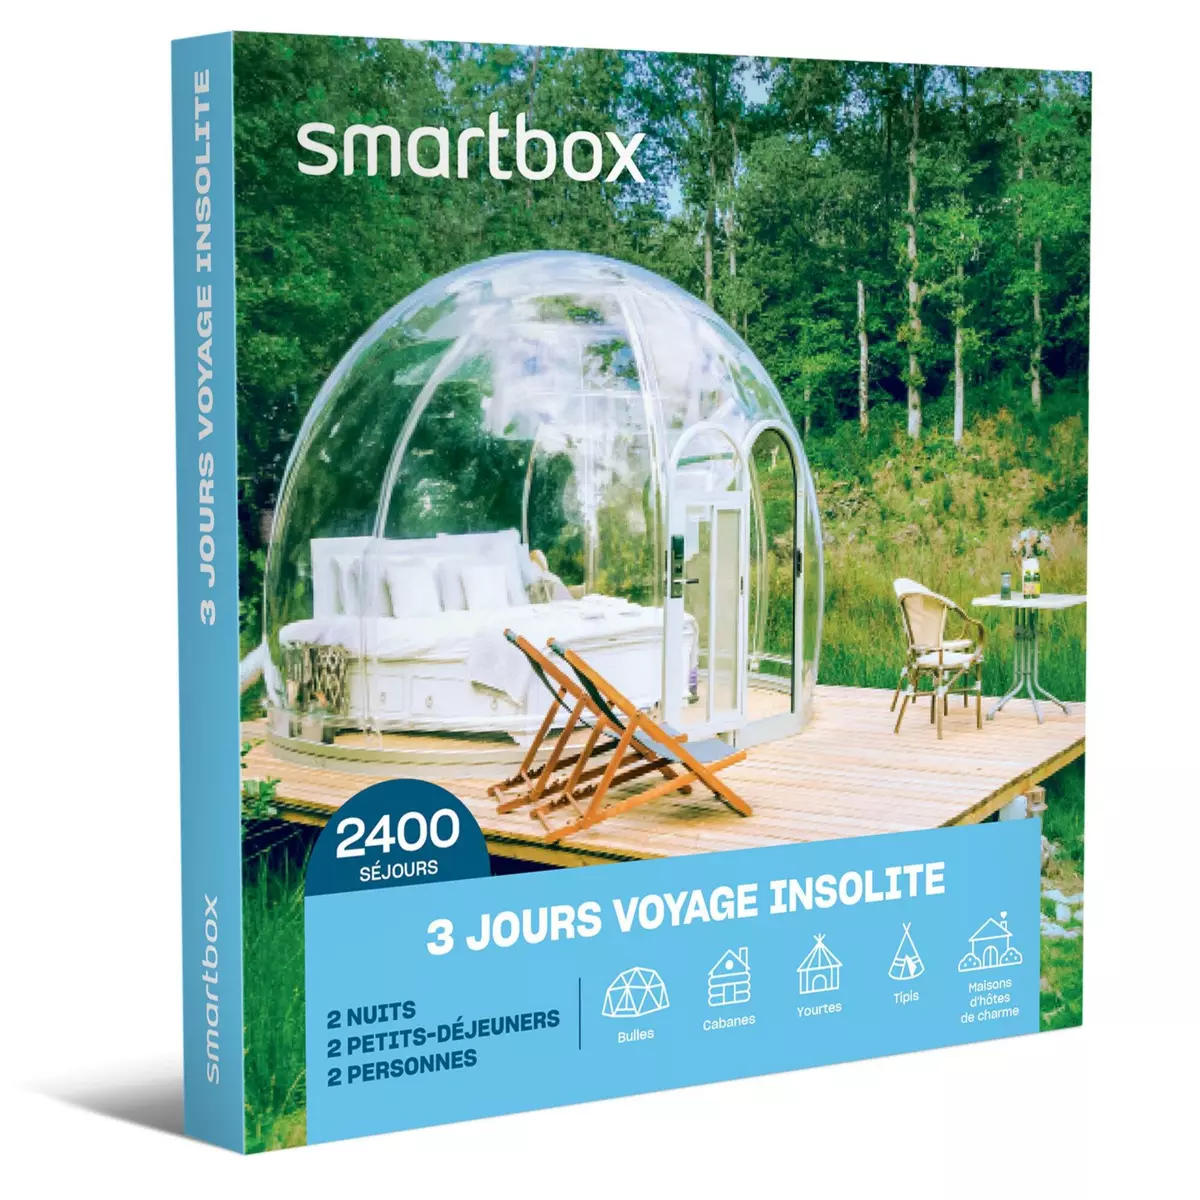 Smartbox 3 jourssvoyage insolite - Coffret Cadeau Séjour